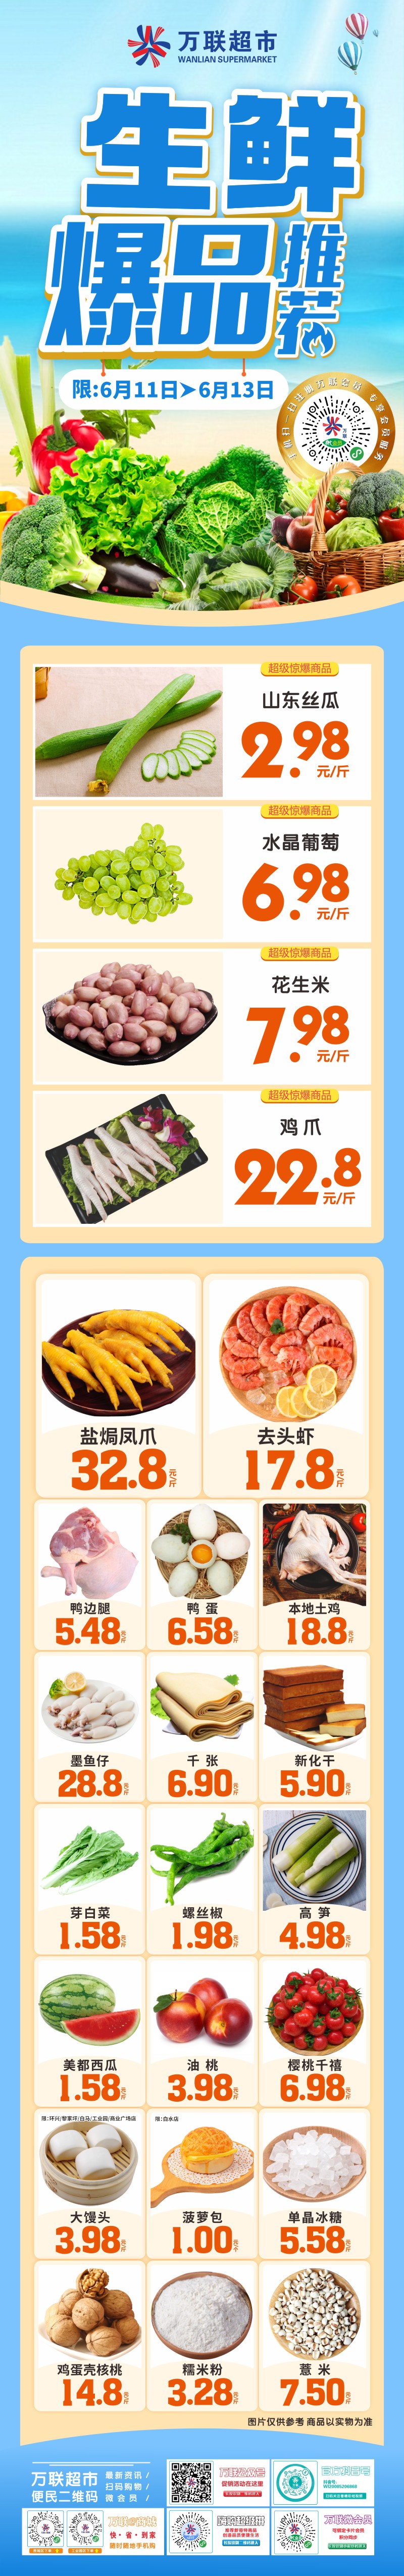 【万联超市】生鲜爆品推荐，山东丝瓜2.98元/斤，水晶葡萄6.98元/斤，鸡爪22.8元/斤，